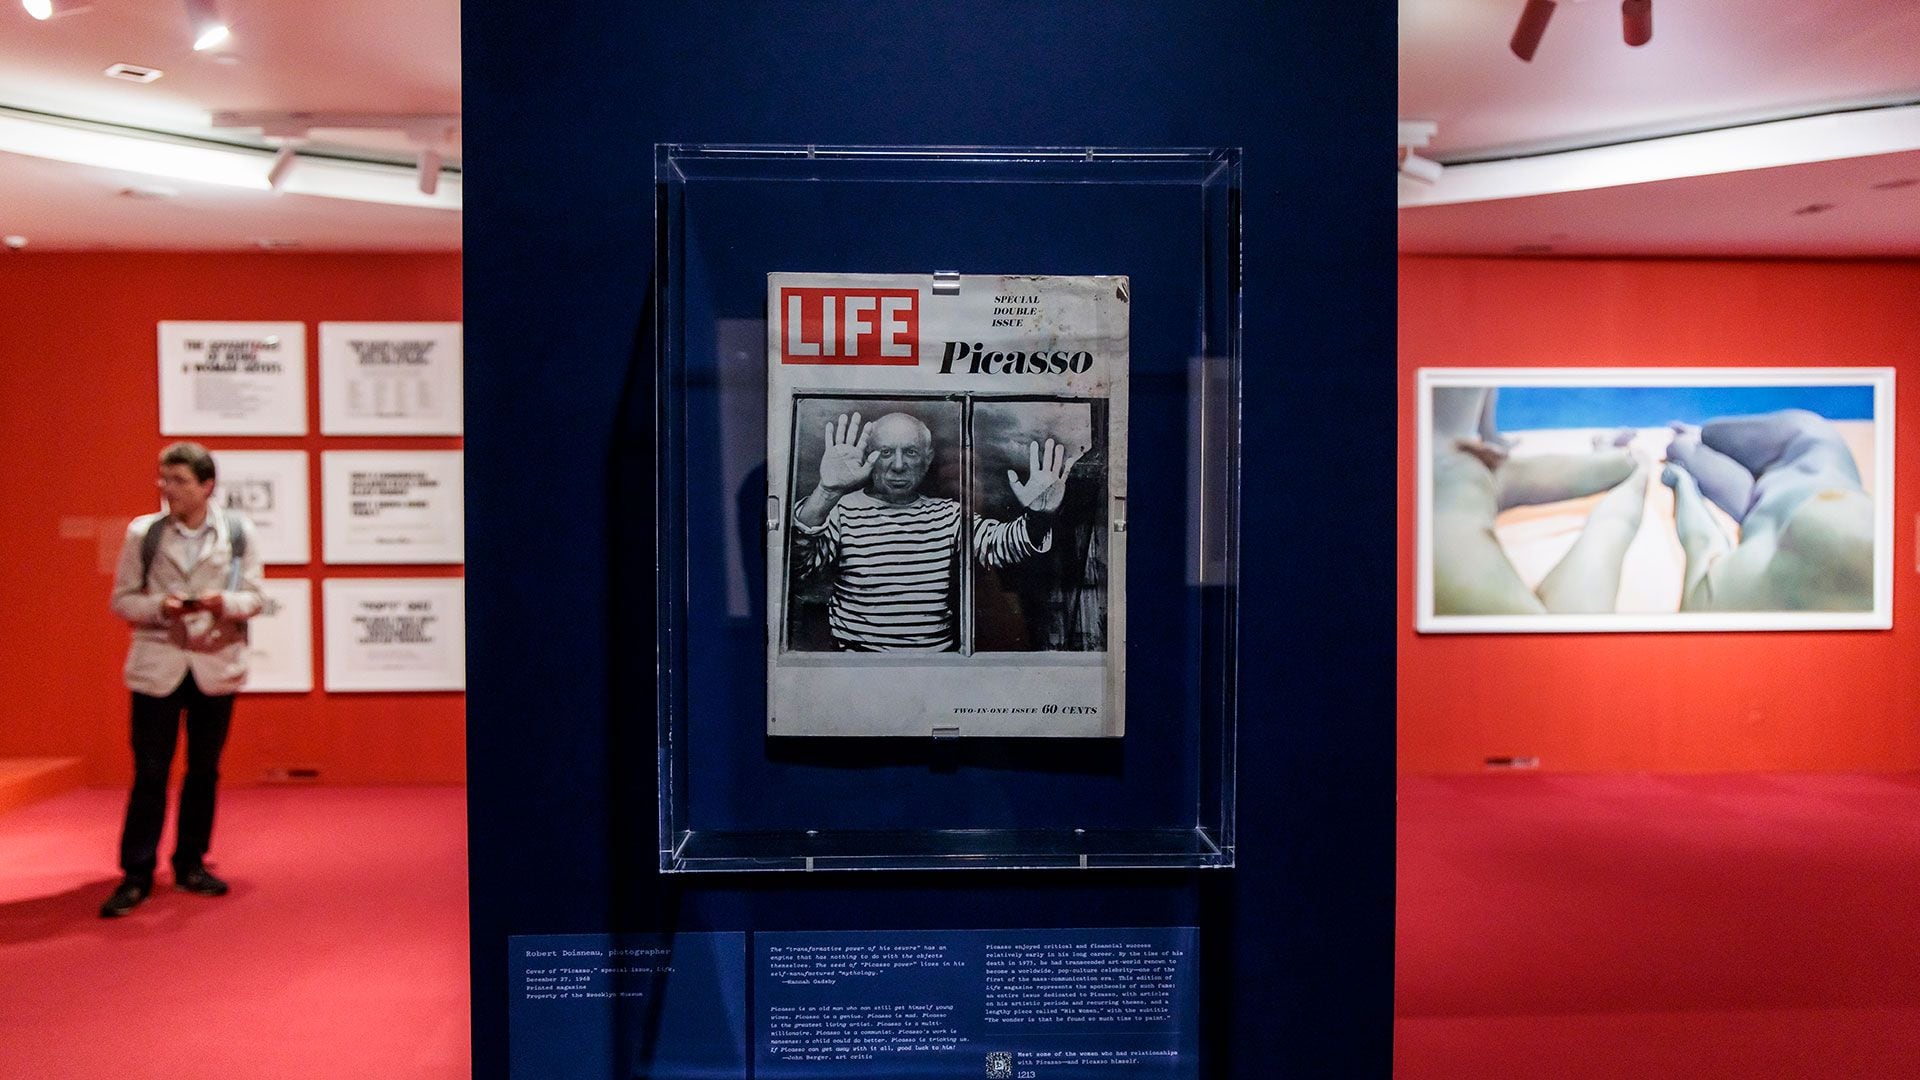 La exhibición explora de manera crítica el legado de Picasso desde una perspectiva contemporánea y feminista (EFE/EPA/JUSTIN LANE)
